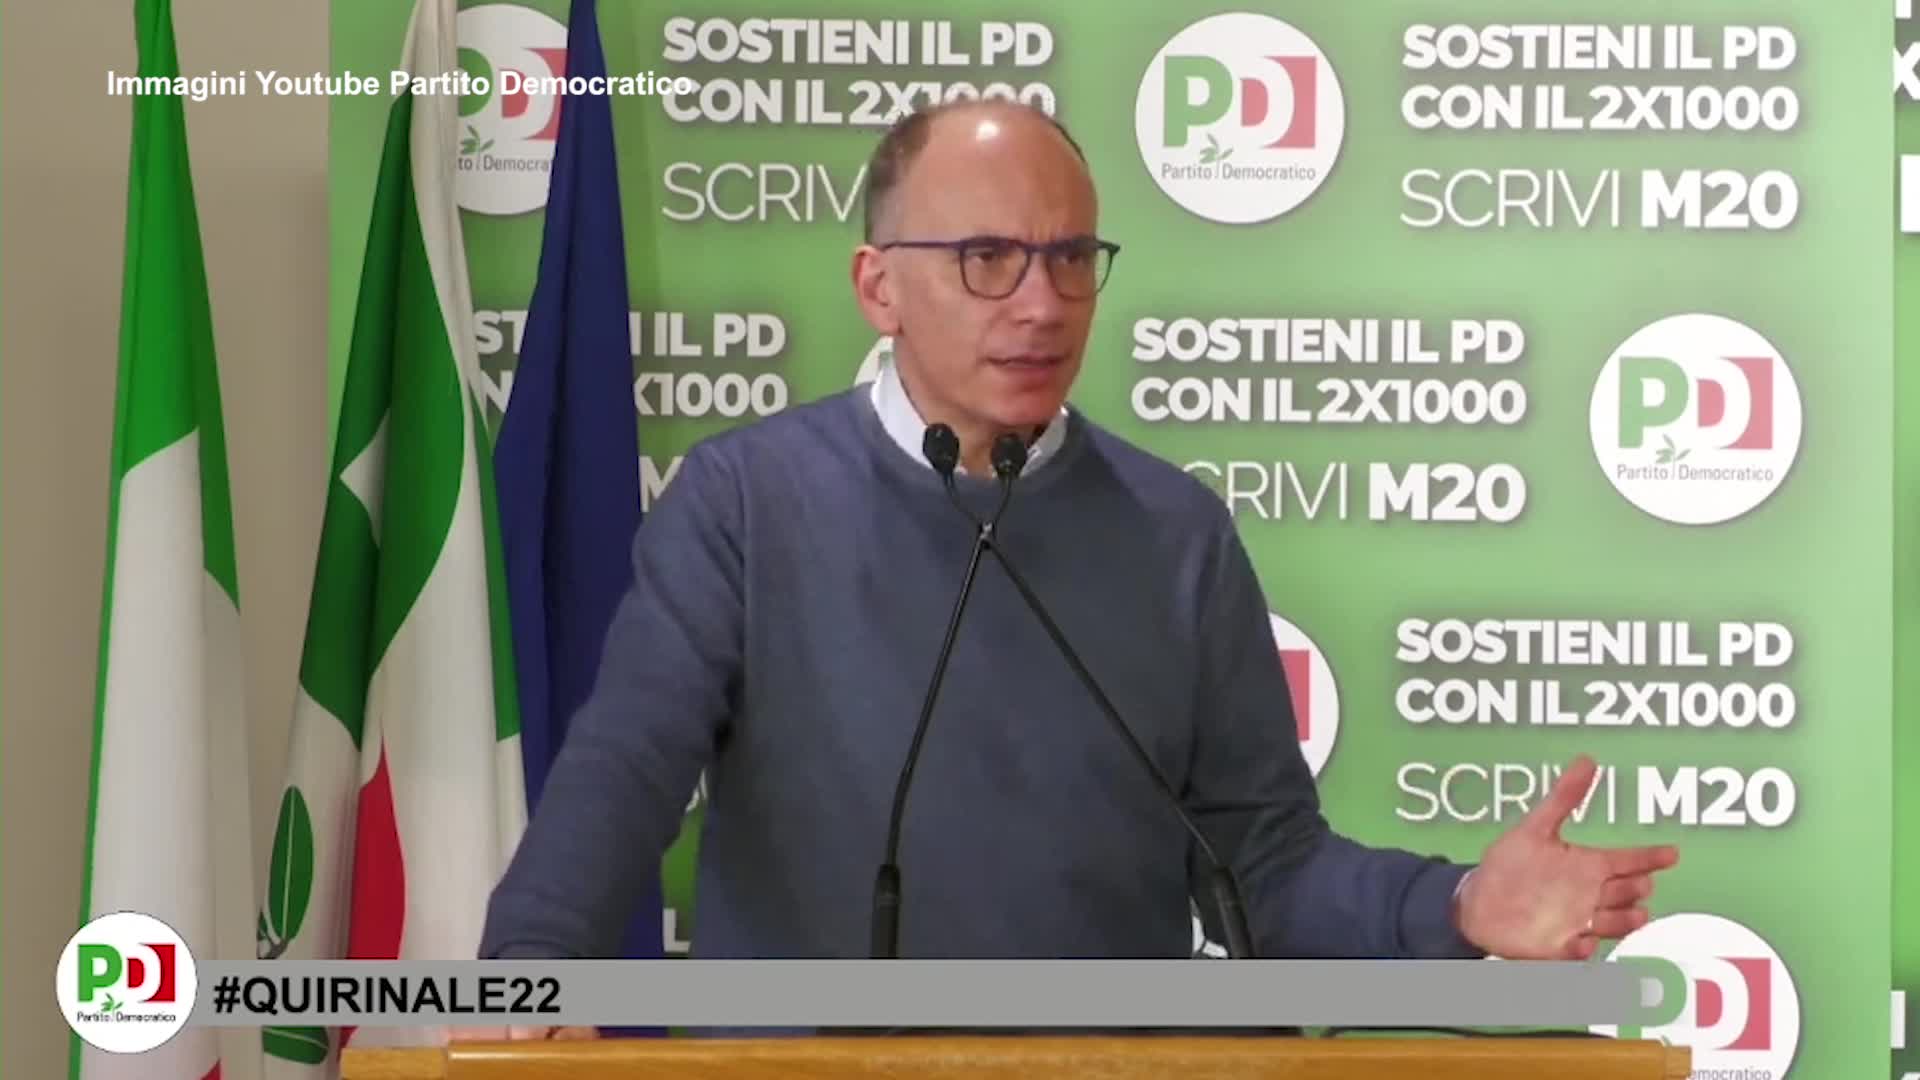 Quirinale, Letta: "Berlusconi il nome più divisivo, ora è più difficile"